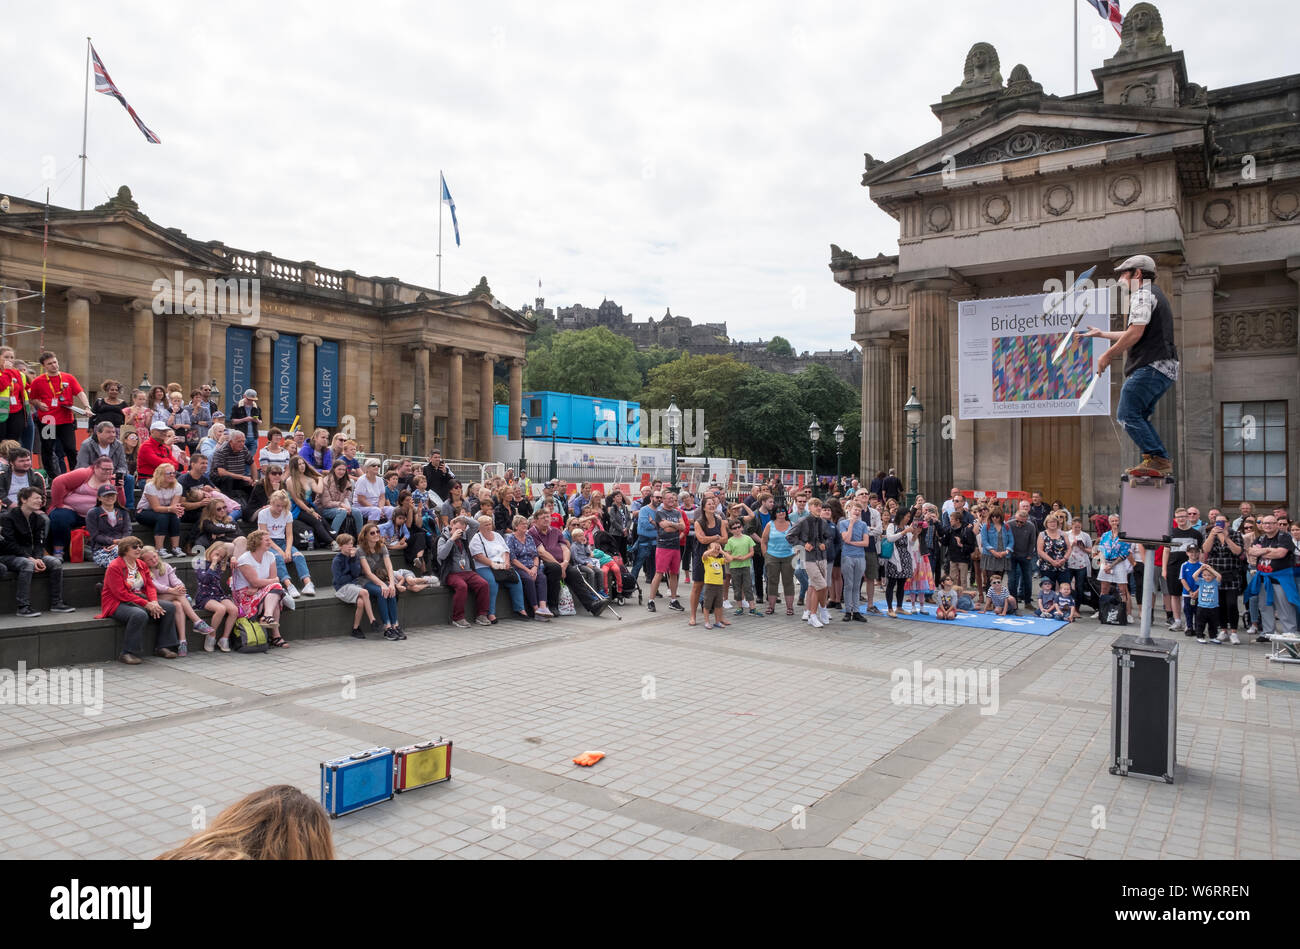 Ein Straßenkünstler unterhält die Menge auf dem Mound in Edinburgh Teil des Edinburgh Festival Fringe, das größte Kunstfestival der Welt. Stockfoto